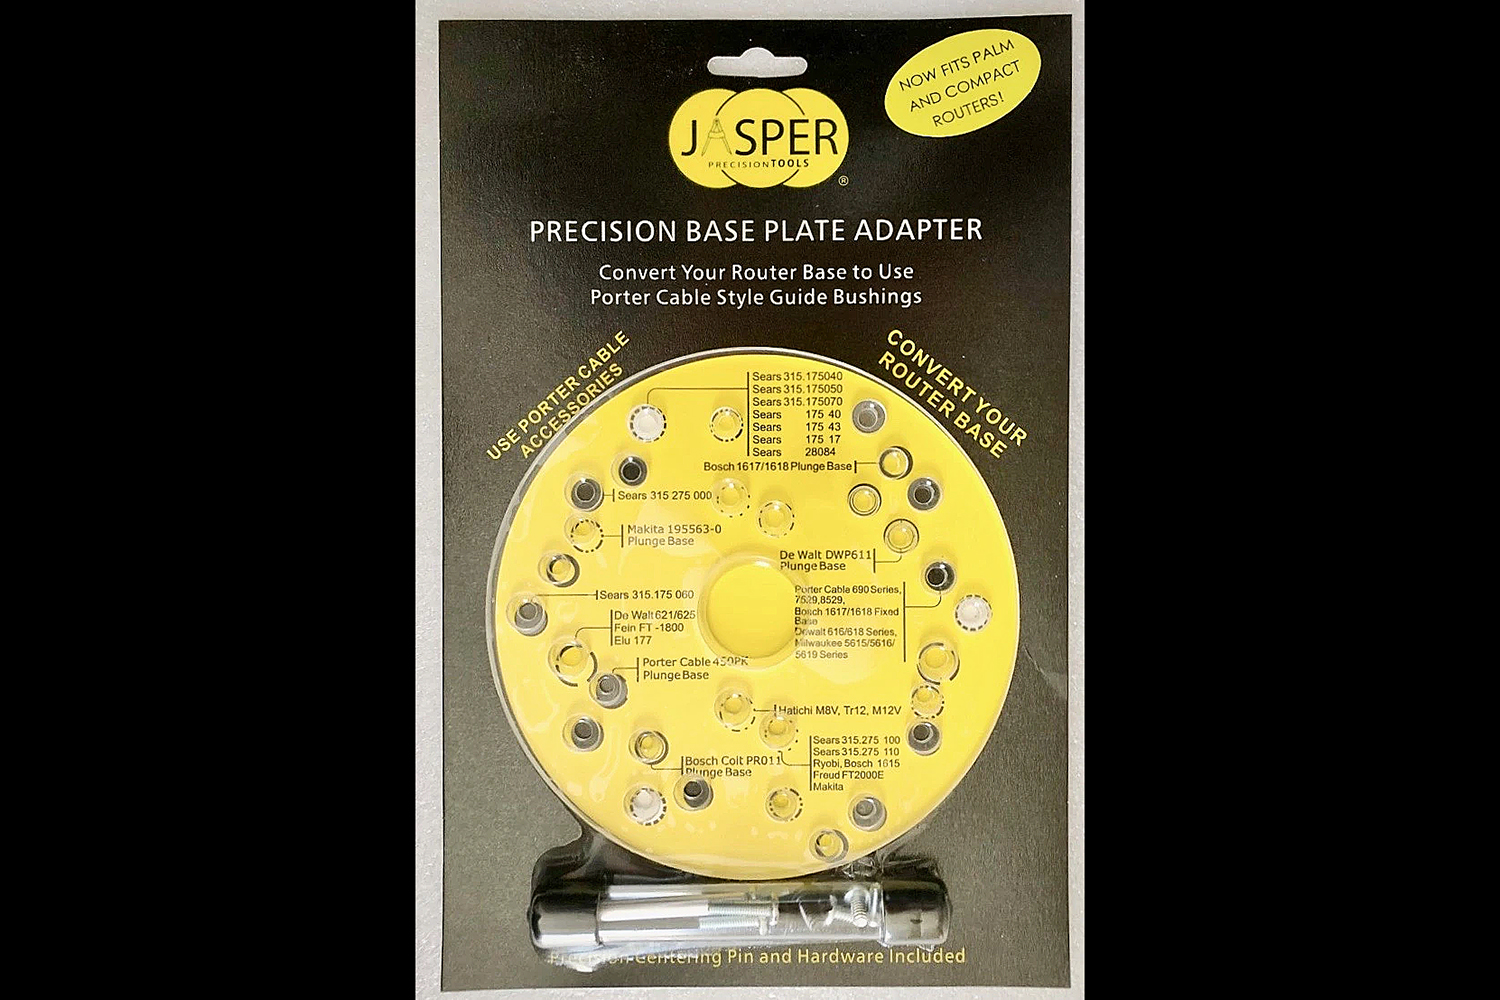 Hændelse, begivenhed Antipoison afstand Jasper Precision Base Plate Adapter Model | The Woodsmith Store